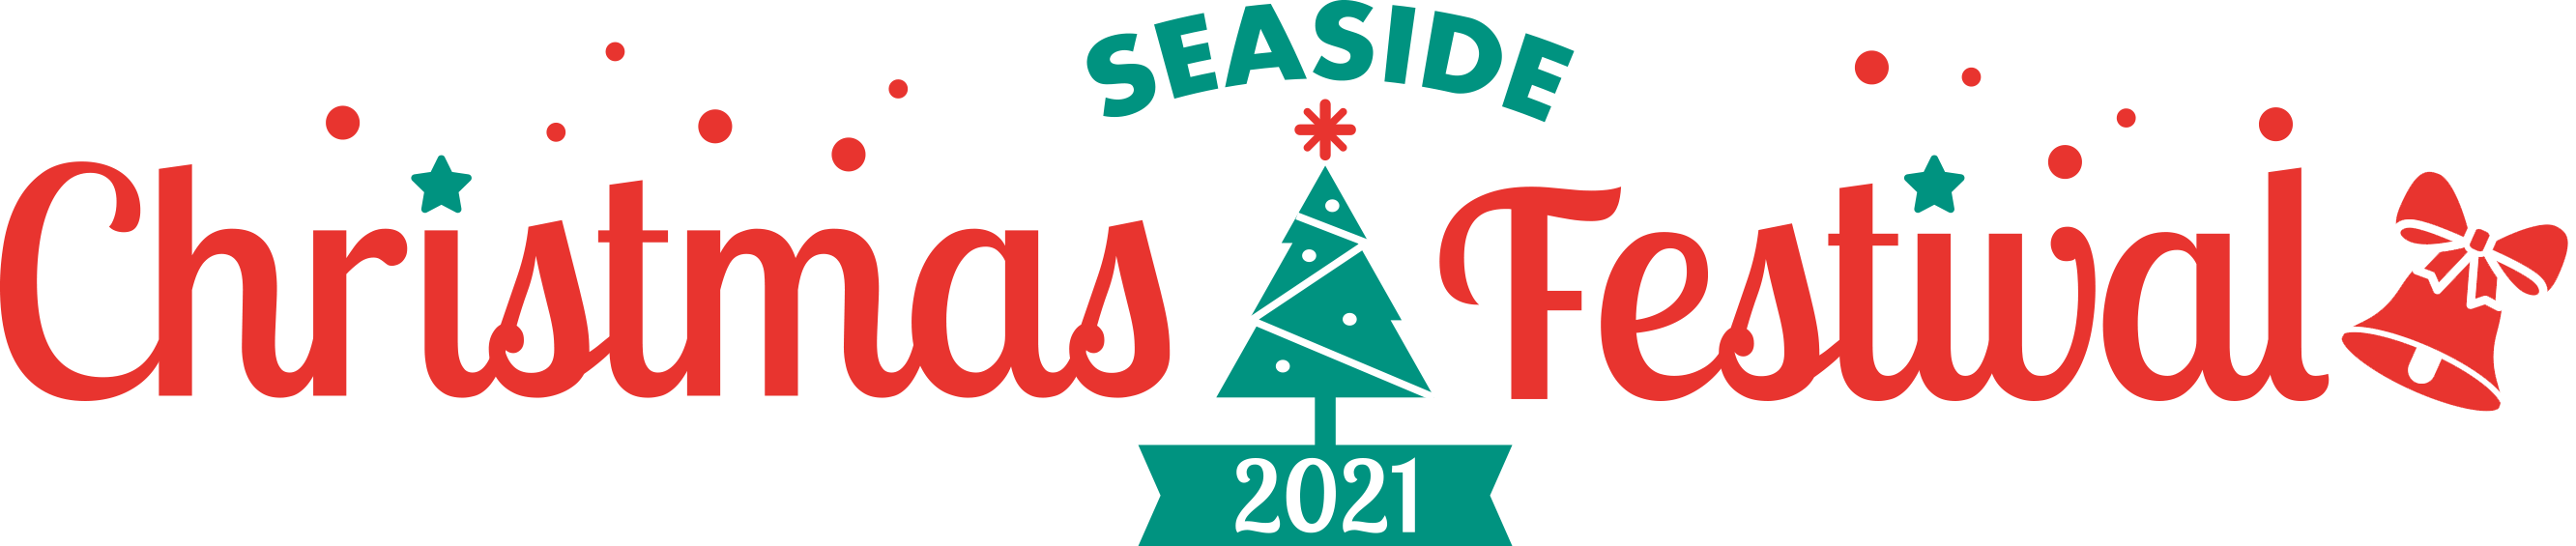 SEASIDE Christmas Festival 2021